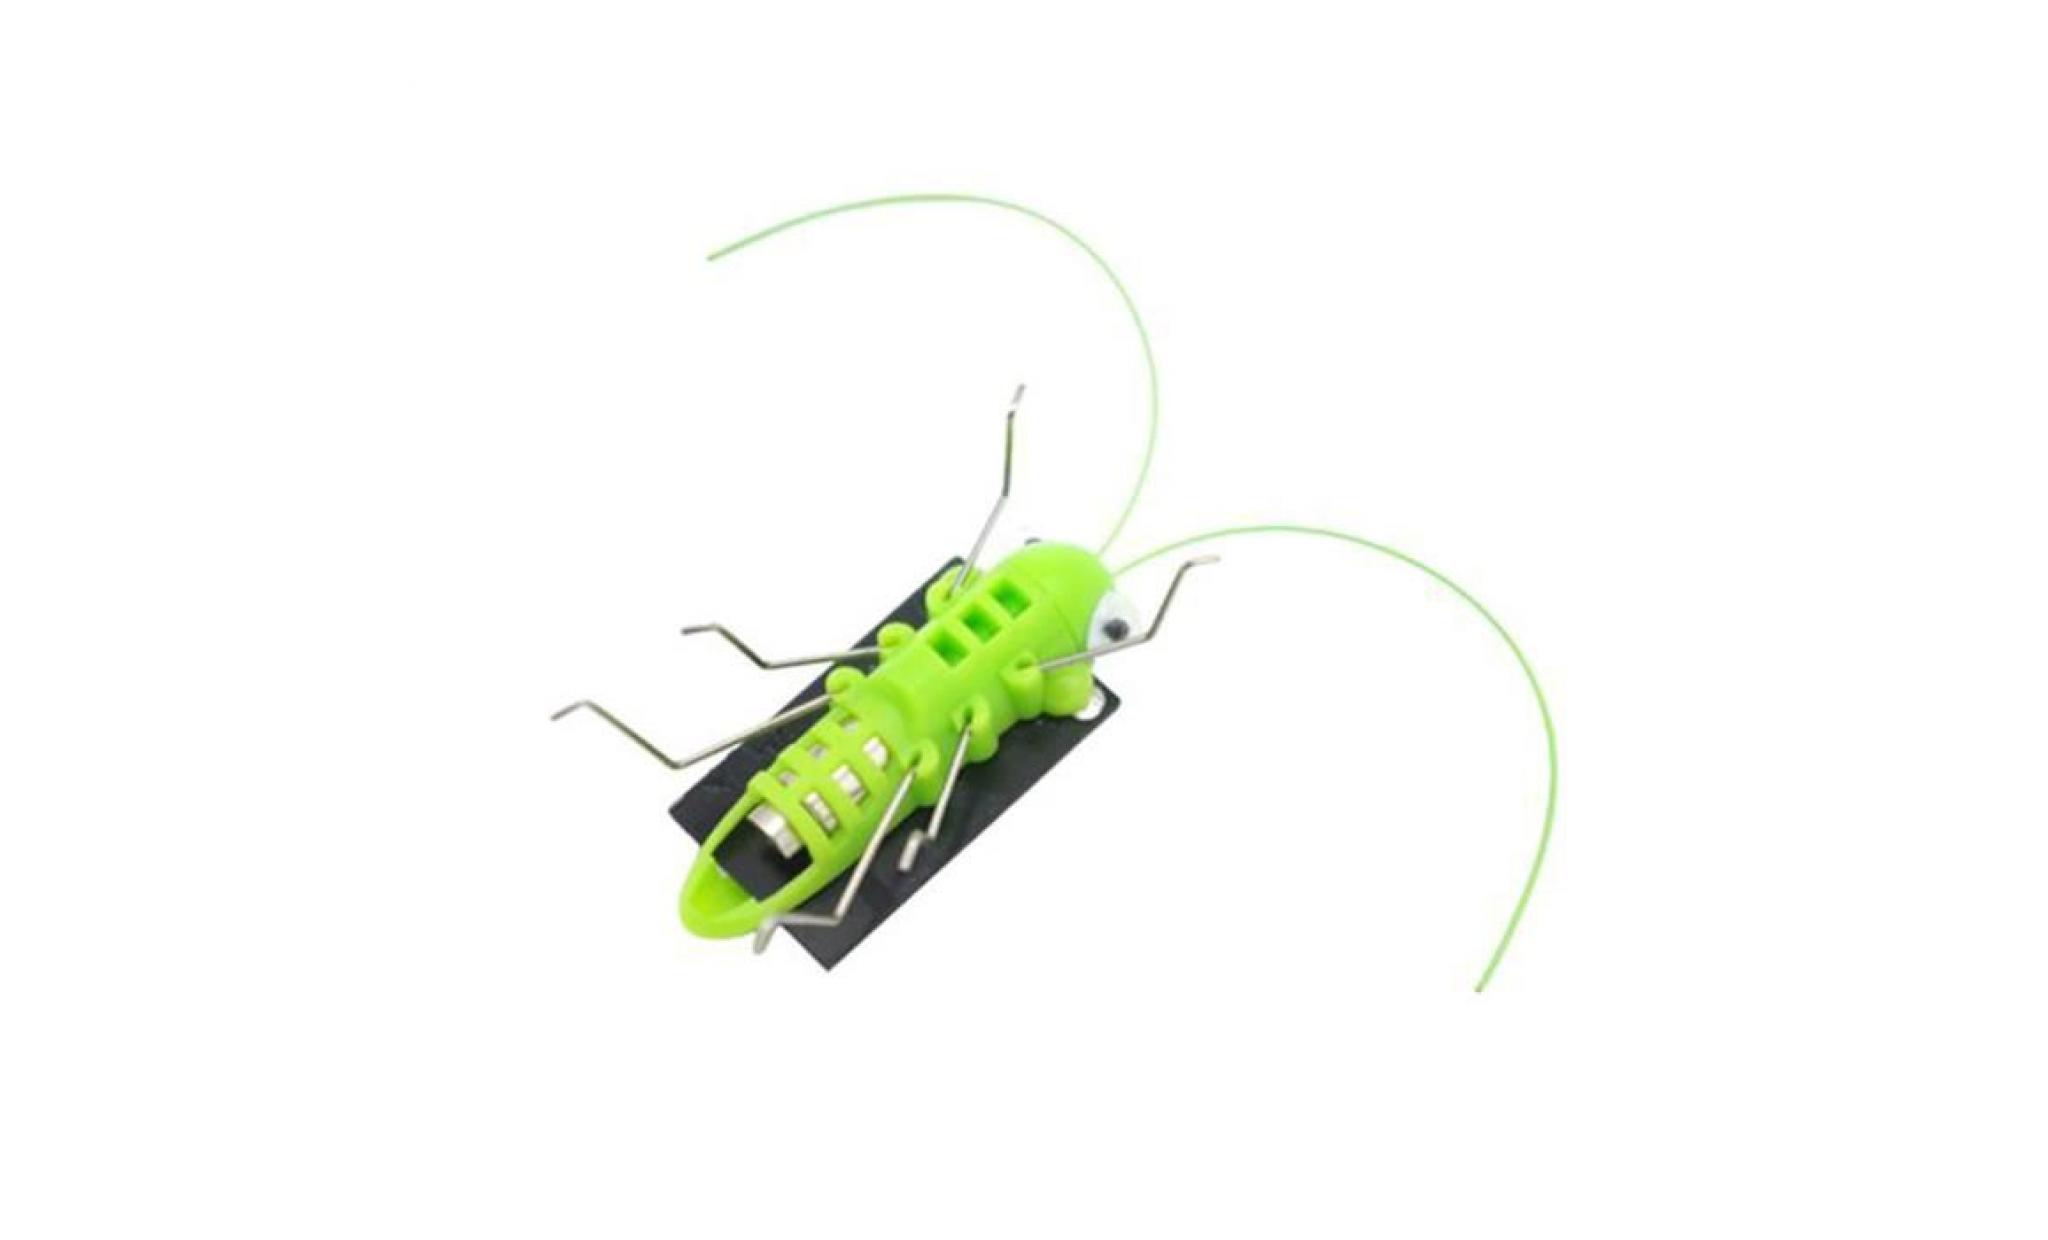 mosakog® Éducation à énergie solaire grasshopper robot jouet solaire gadget jouet cadeau liy71208005